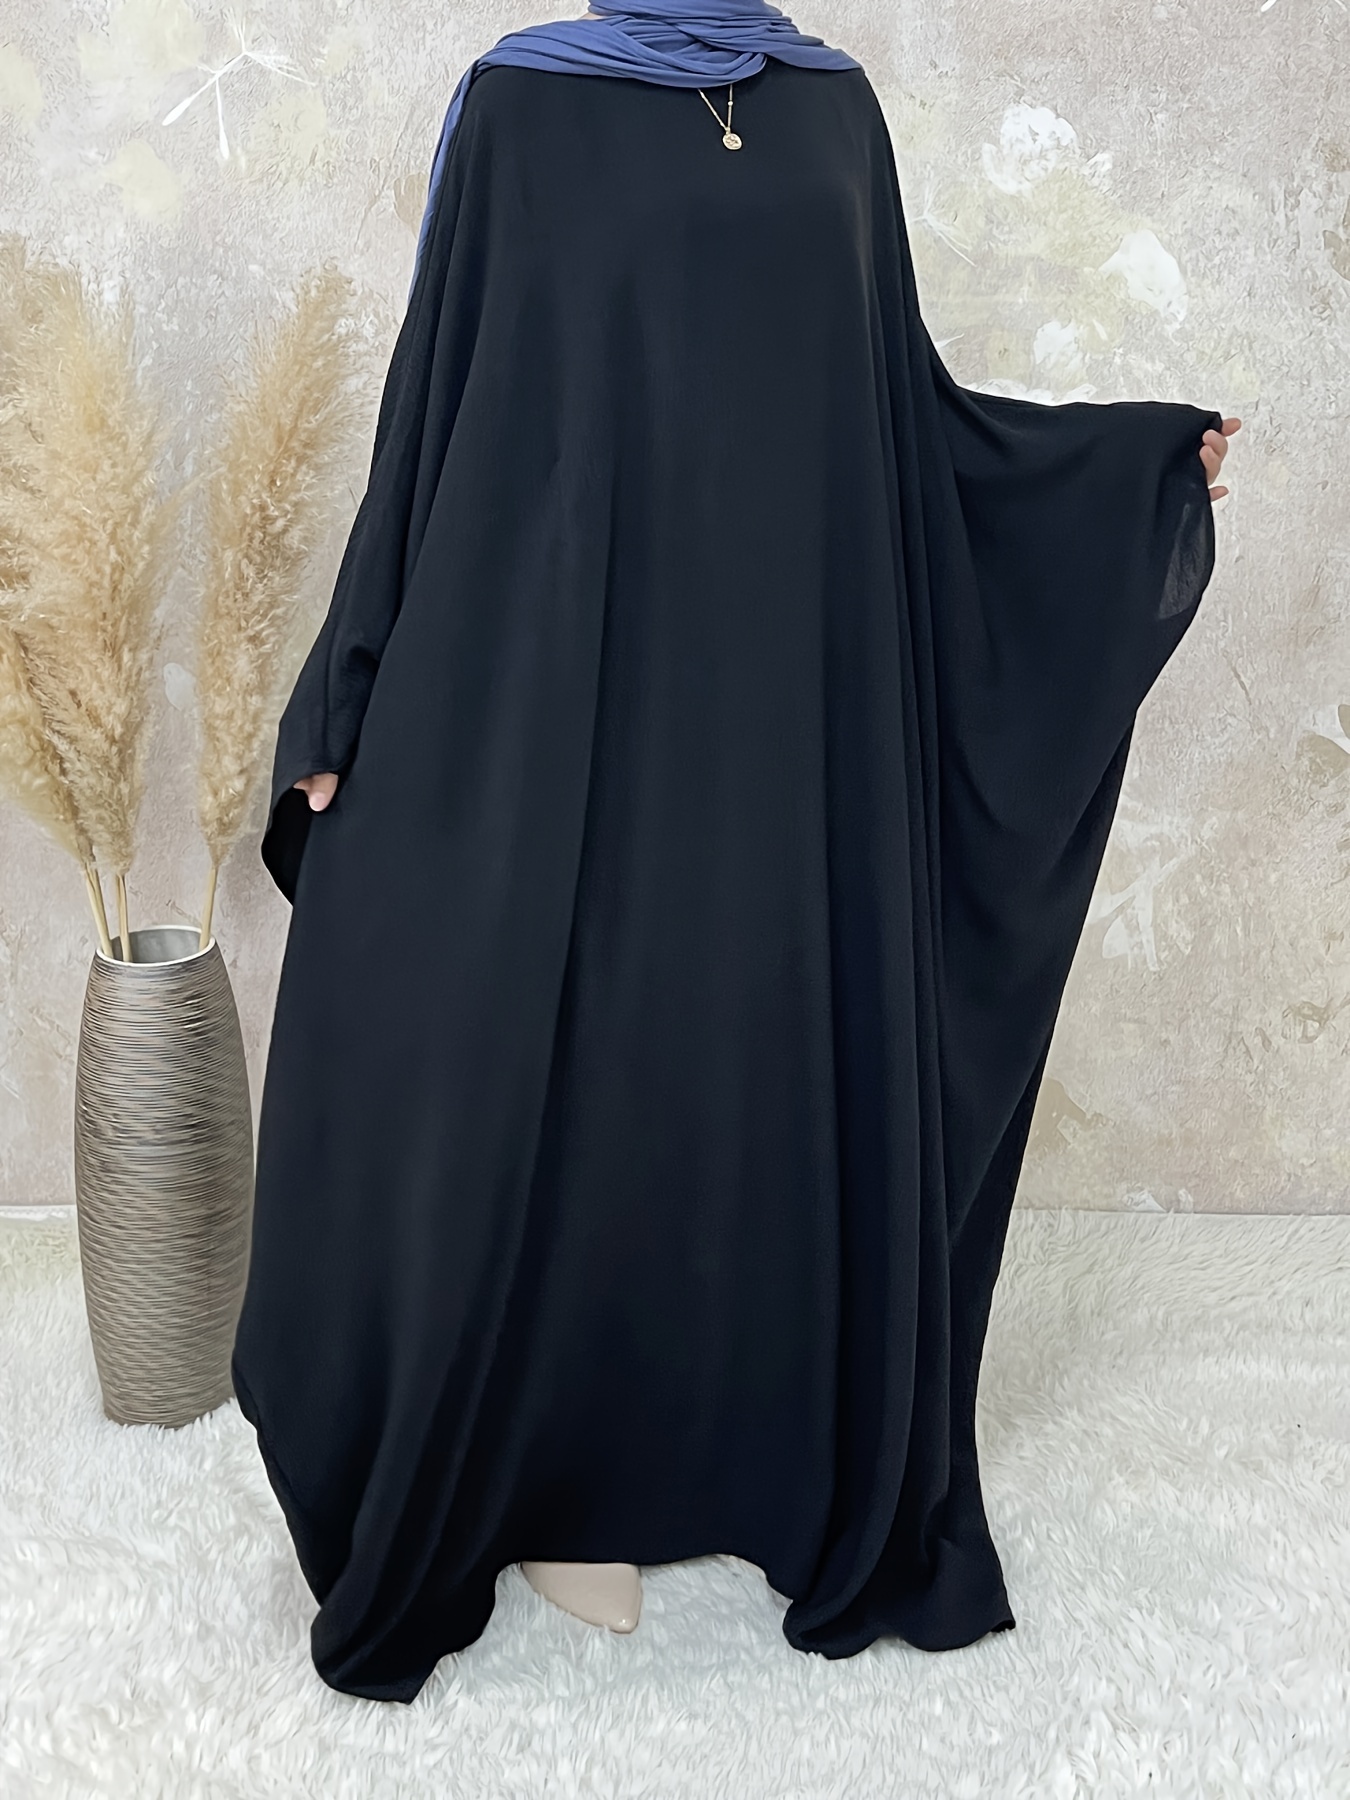 LBECLEY Teen Summer Dresses Dress Long Solid Dress Sleeve Womens Abaya Under  Dress Casual Women's Casual Dress Short Sweater Dresses for Women Black Xxl  